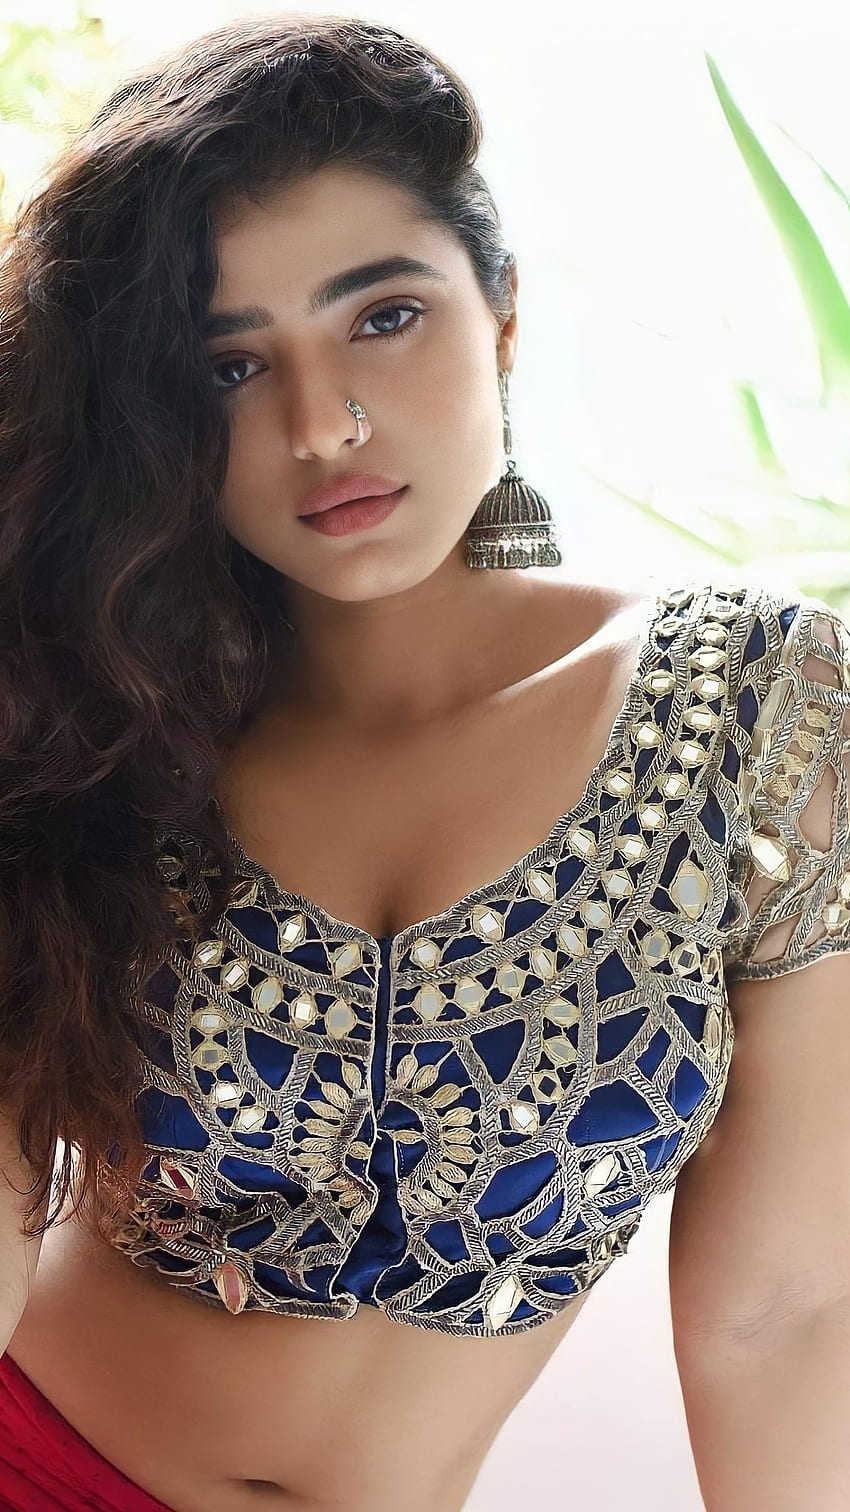 Kethika sharma, aktris telugu wallpaper ponsel HD